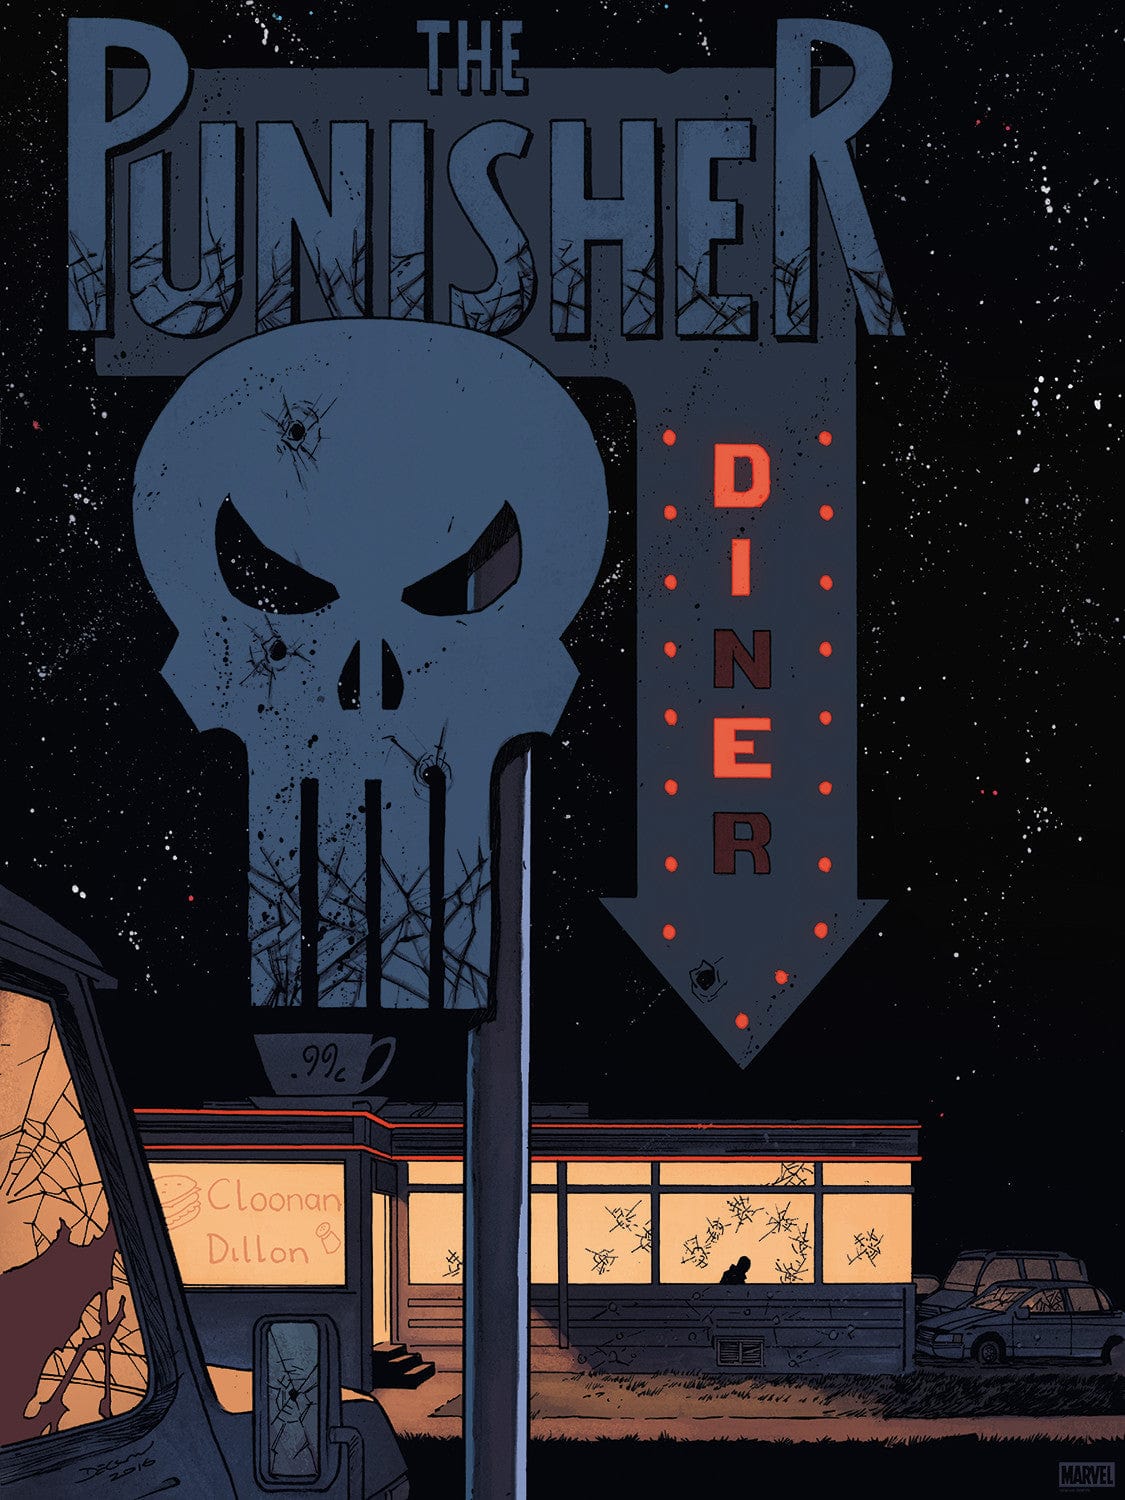 The Punisher – Mondo